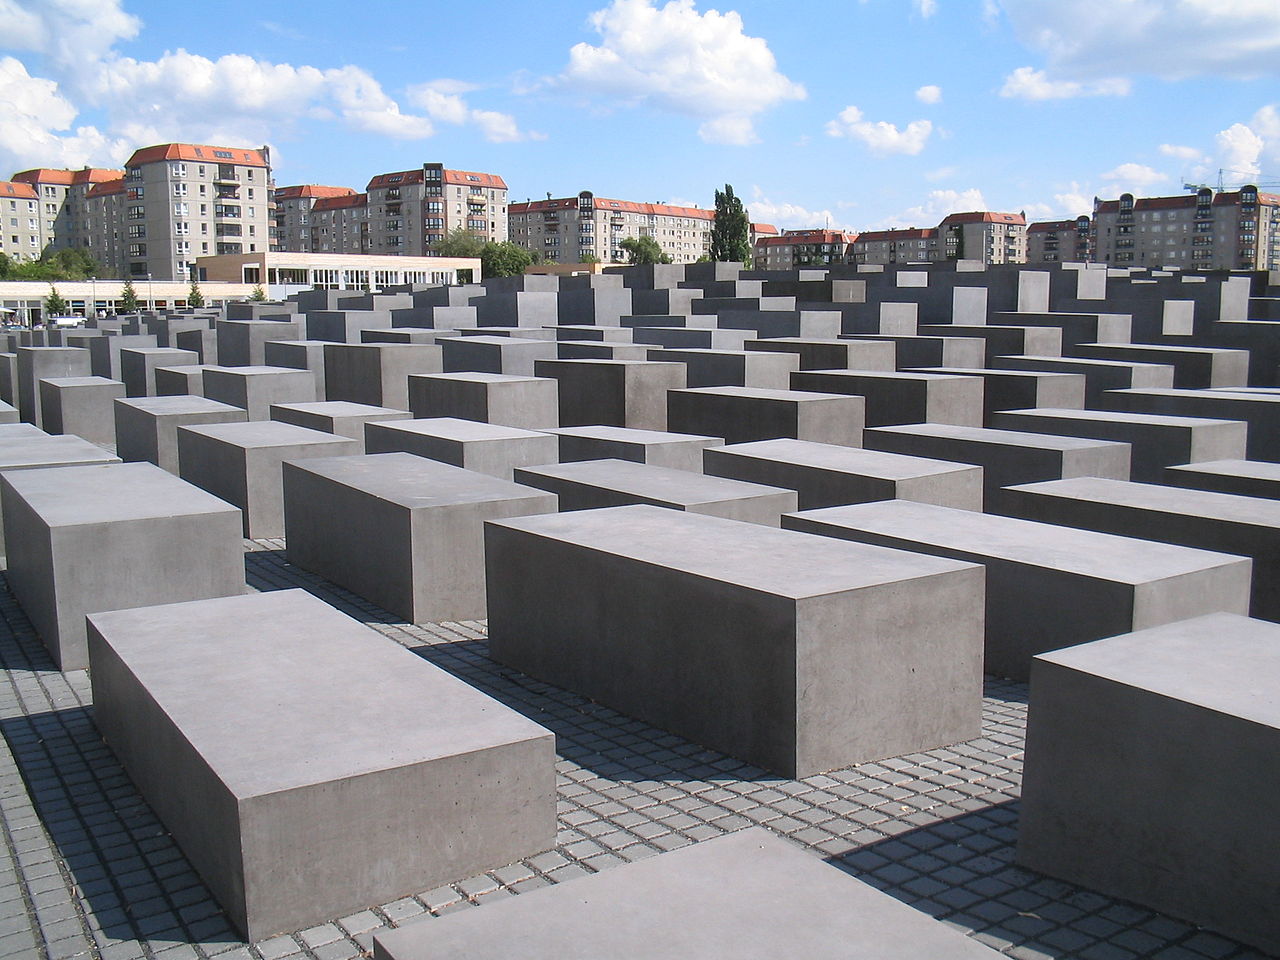 Bild Denkmal für die ermordeten Juden Europas in Berlin